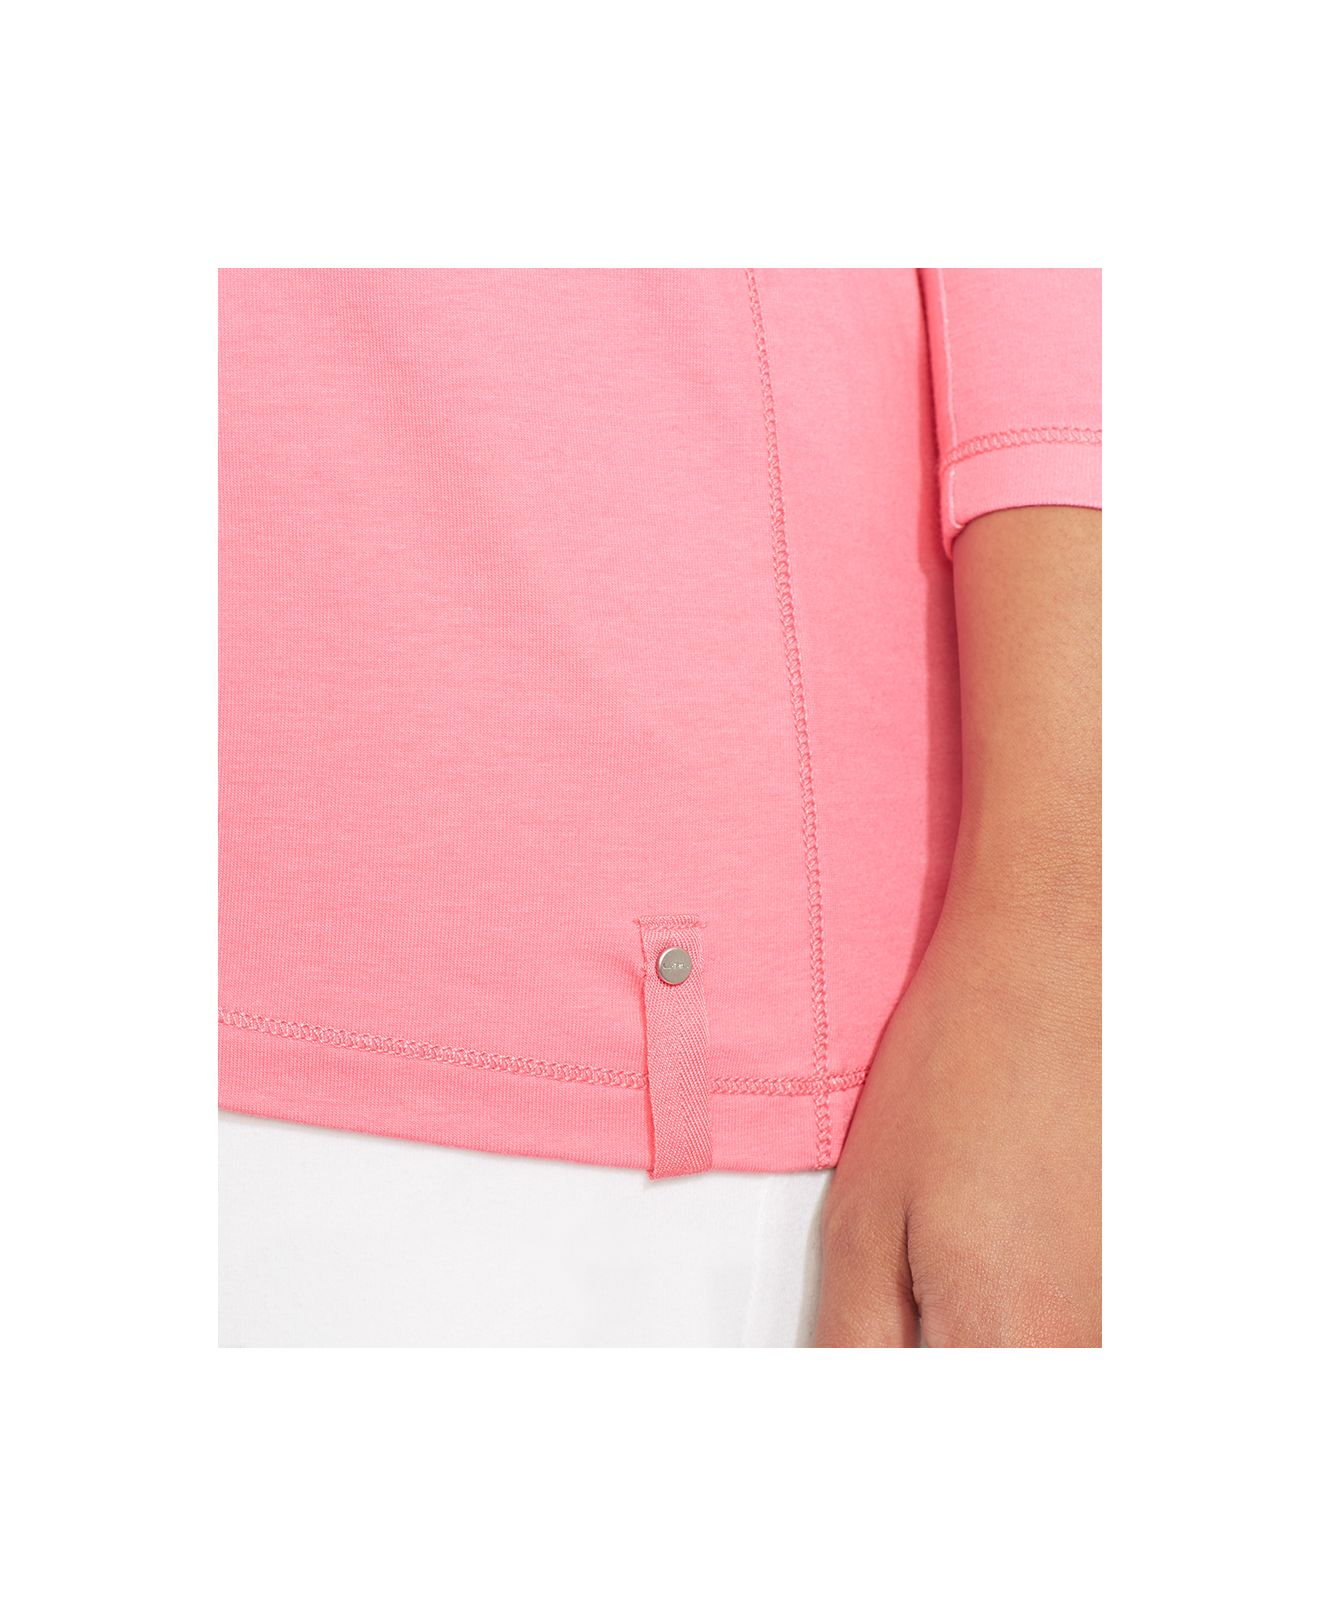 Lauren by Ralph Lauren Plus Size Ombré Half-Zip Shirt in Pink | Lyst